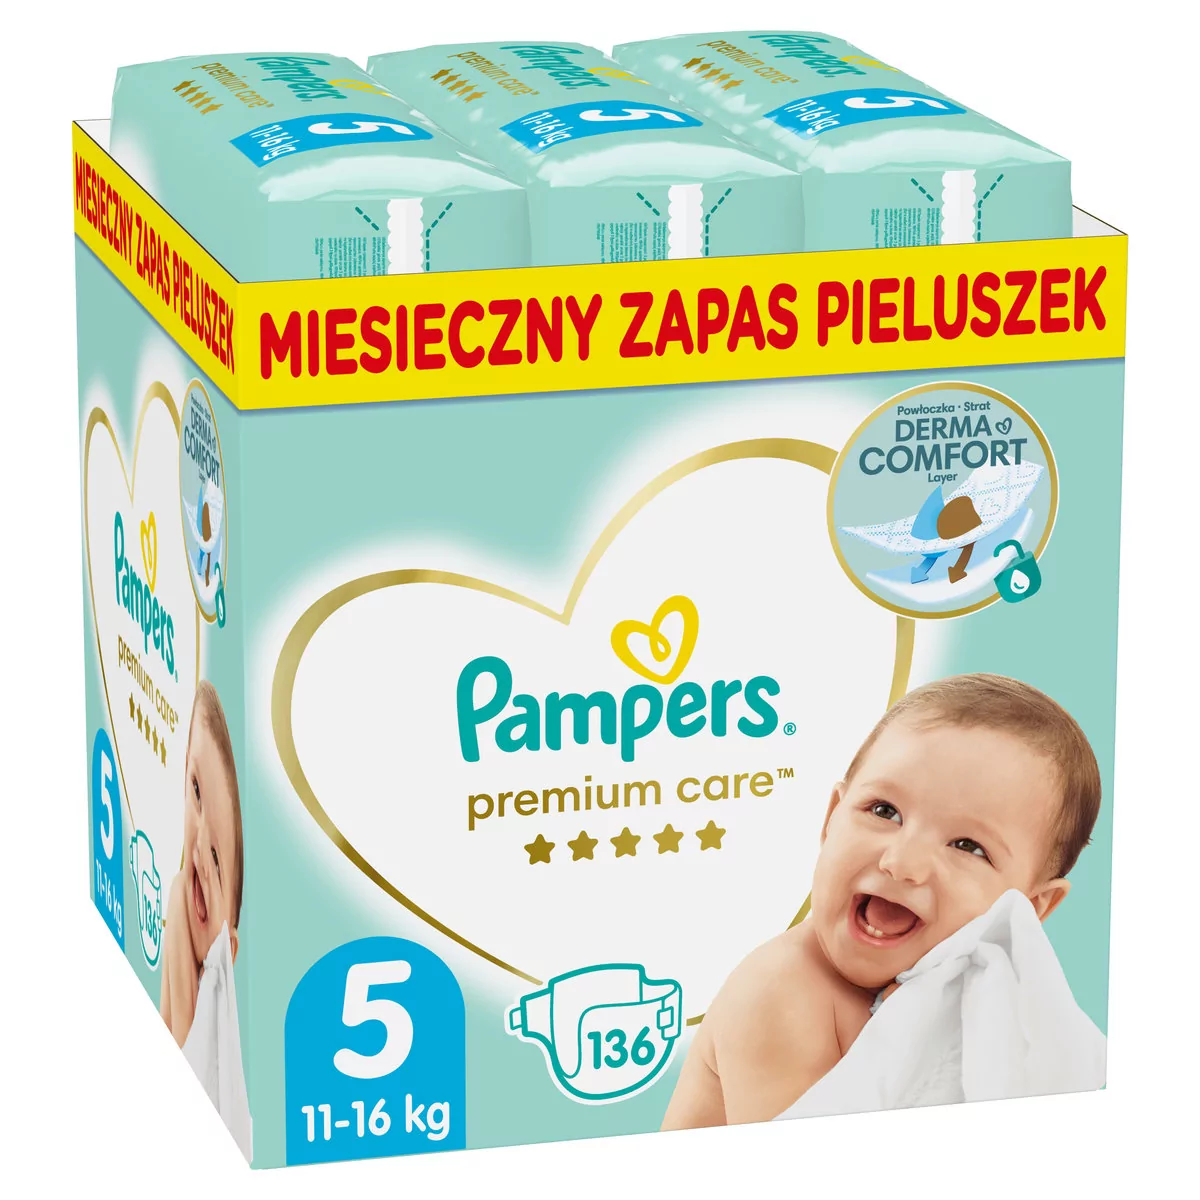 Pampers Premium Care 5 JUNIOR 136 szt 11-16 kg) ZAPAS NA MIESIĄC pieluchy  jednorazowe - Ceny i opinie na Skapiec.pl